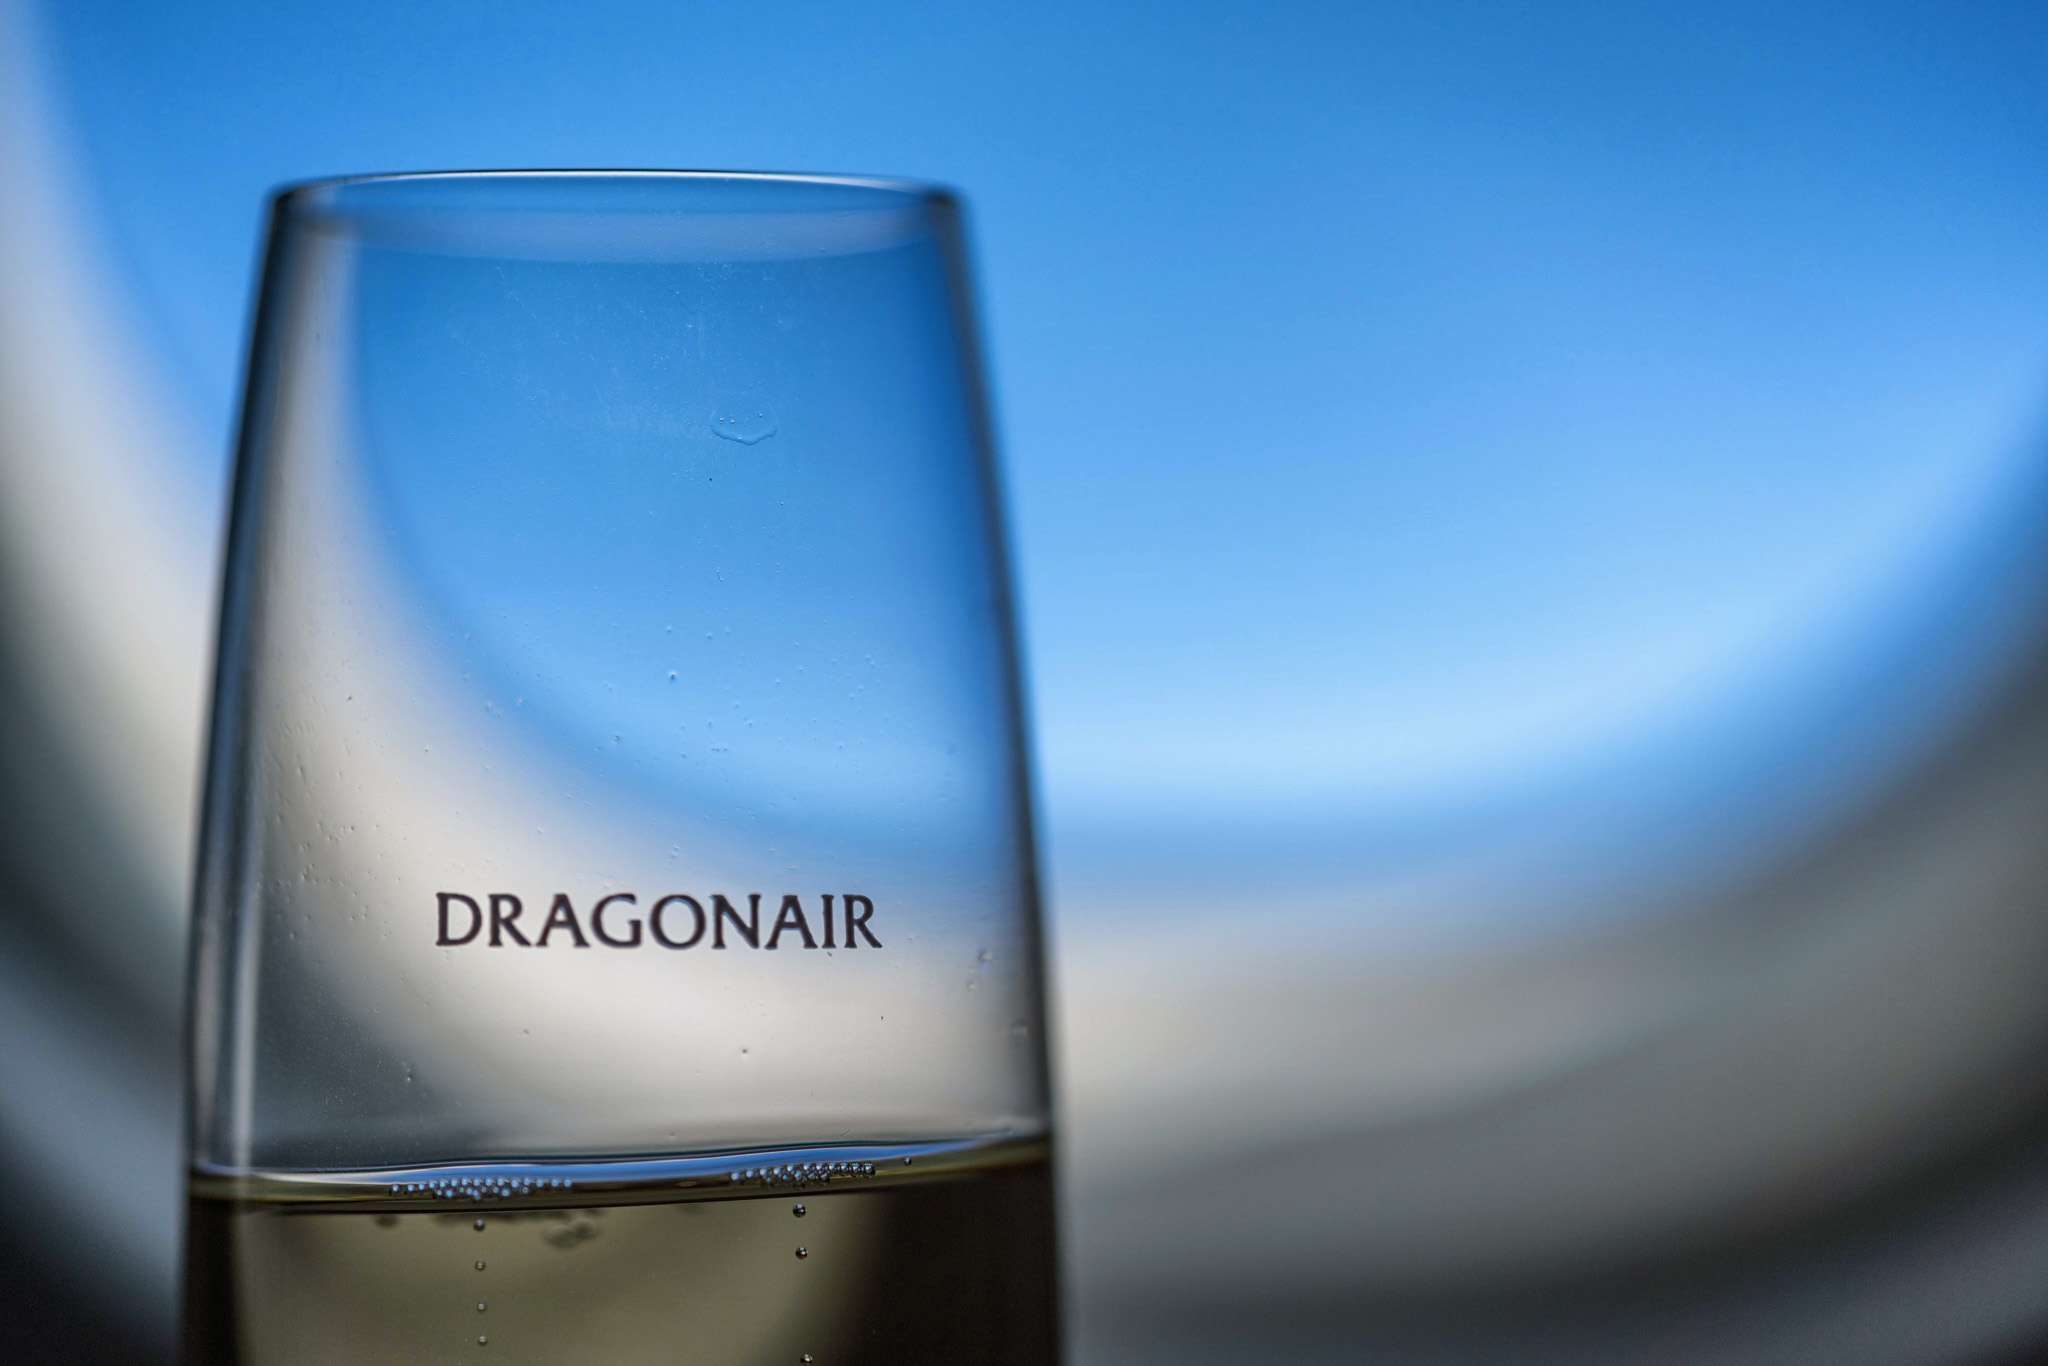 dragonair first class review